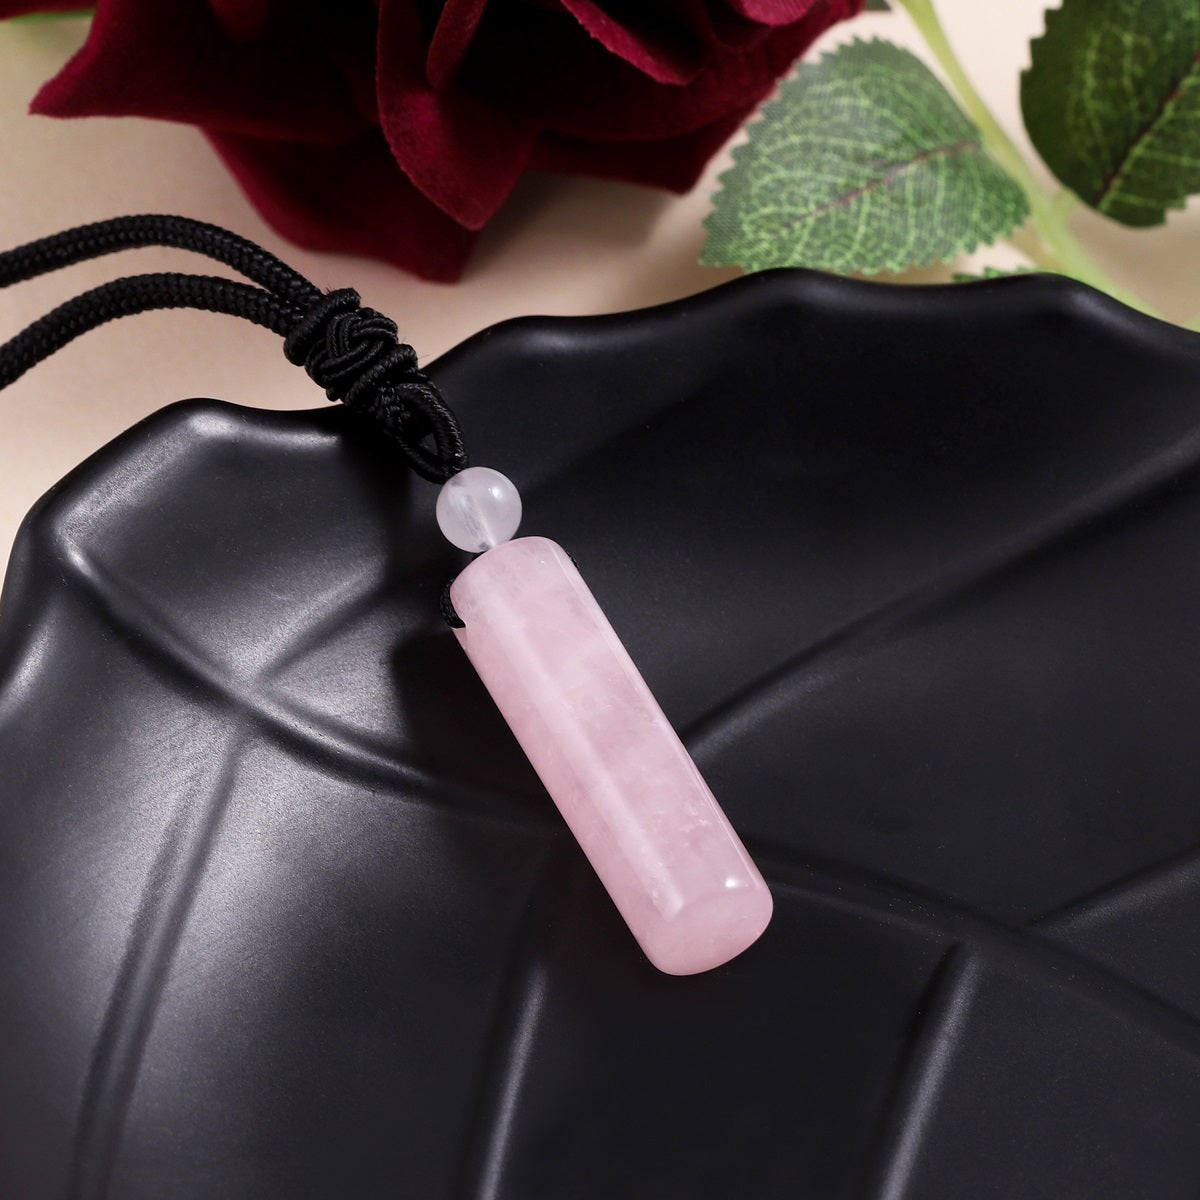 Delicate wrapped design showcasing the Rose Quartz gemstone pendant